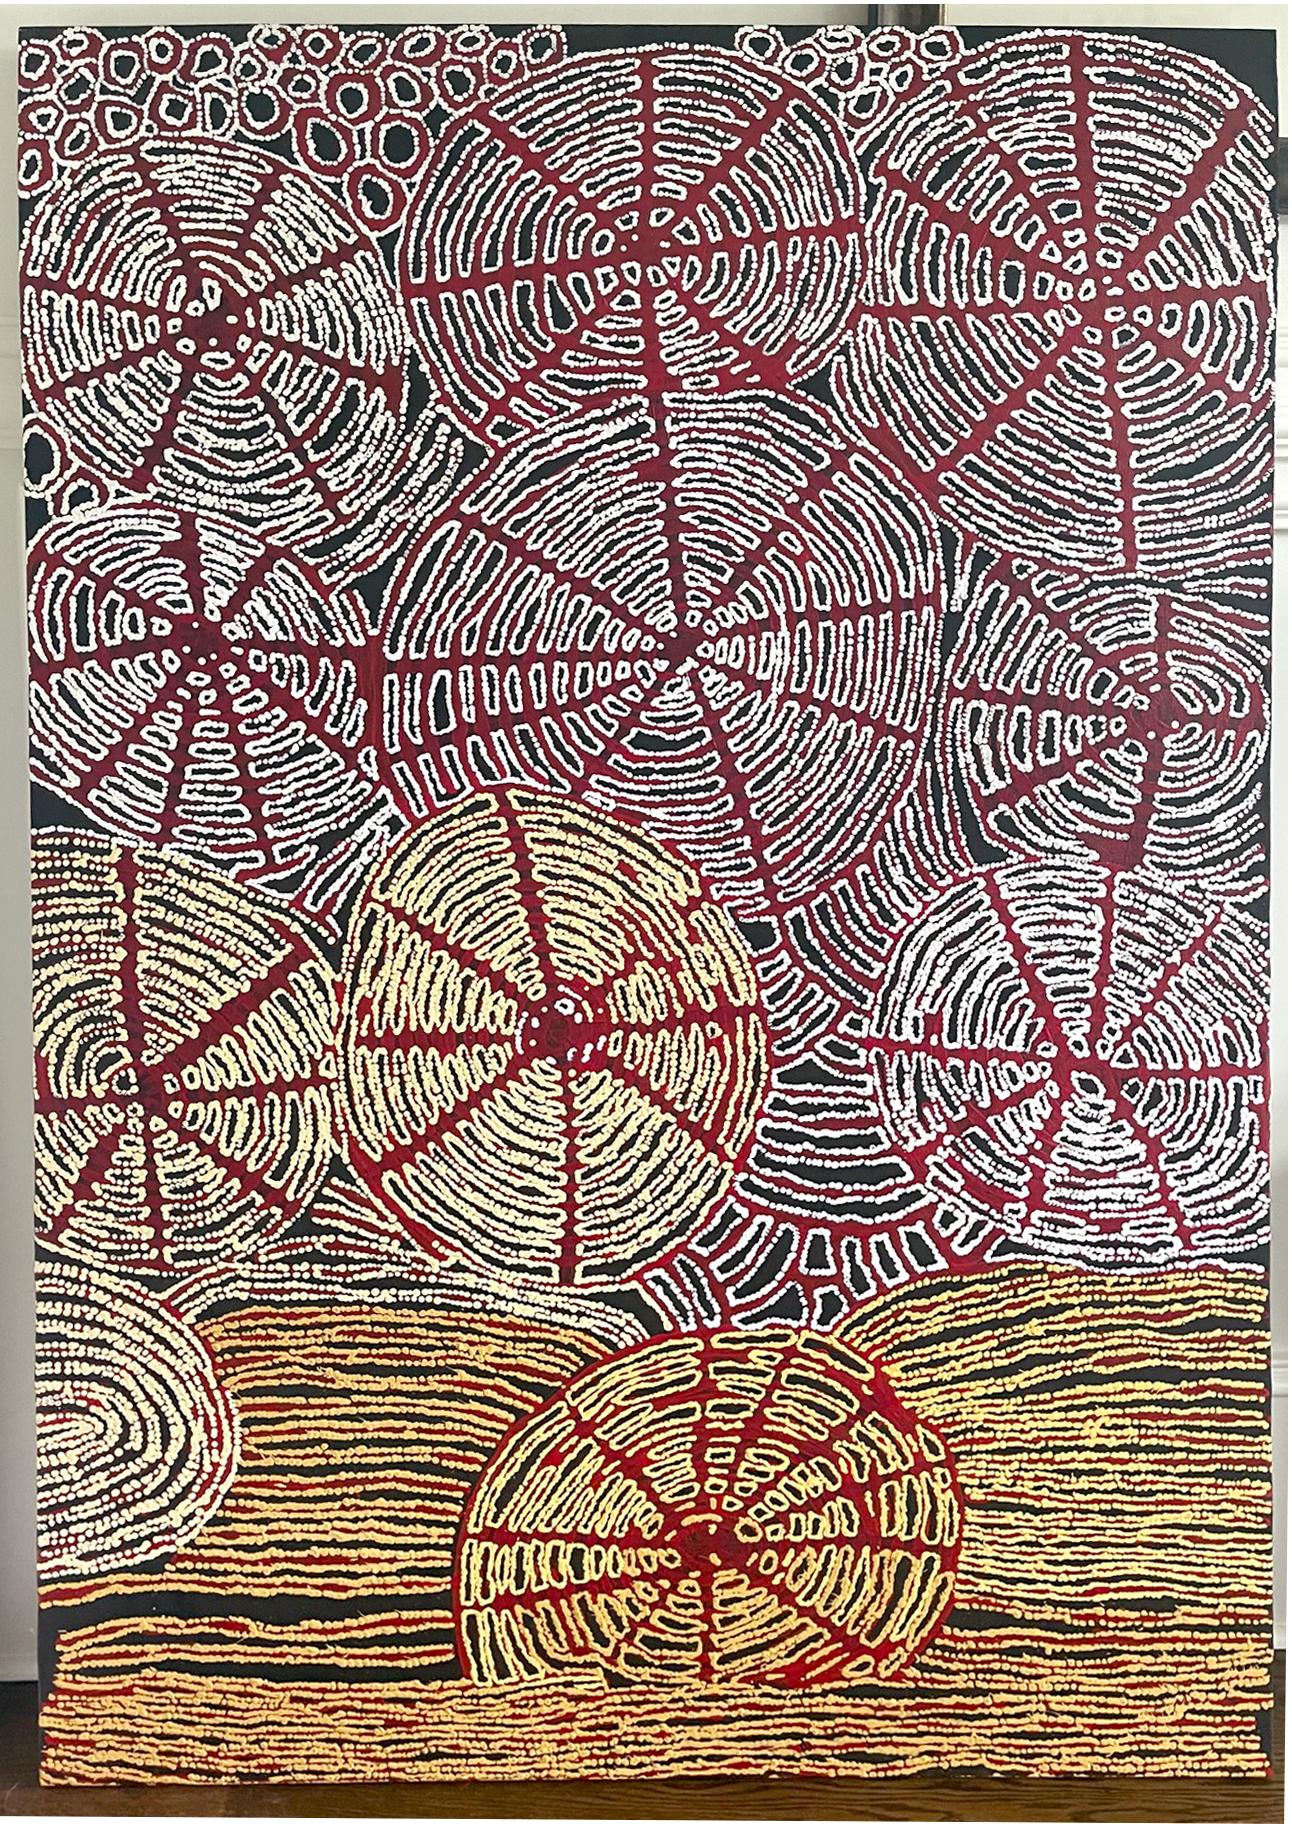 Ein beeindruckendes abstraktes Gemälde des australischen Aborigine-Malers Walangkura Napanangka (1940-2014), das zu dem 2007 in Alice Spring entstandenen Paar gehört. Titel 